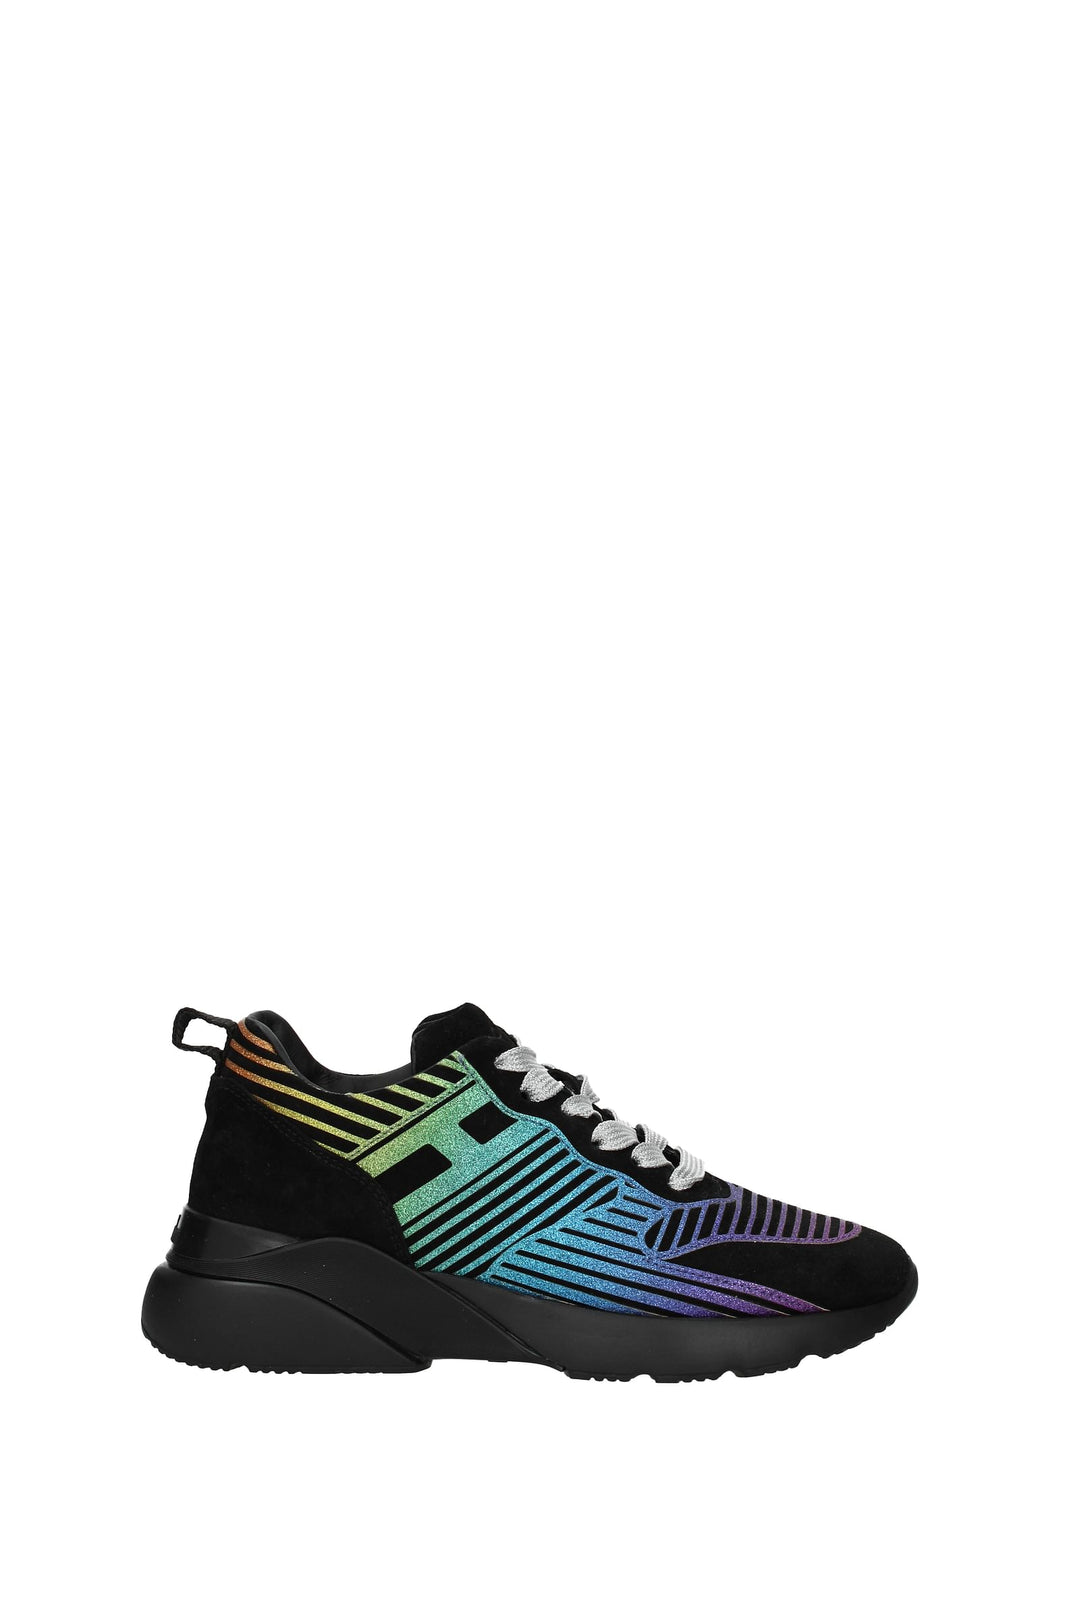 Sneakers Active Camoscio Nero Multicolore - Hogan - Donna